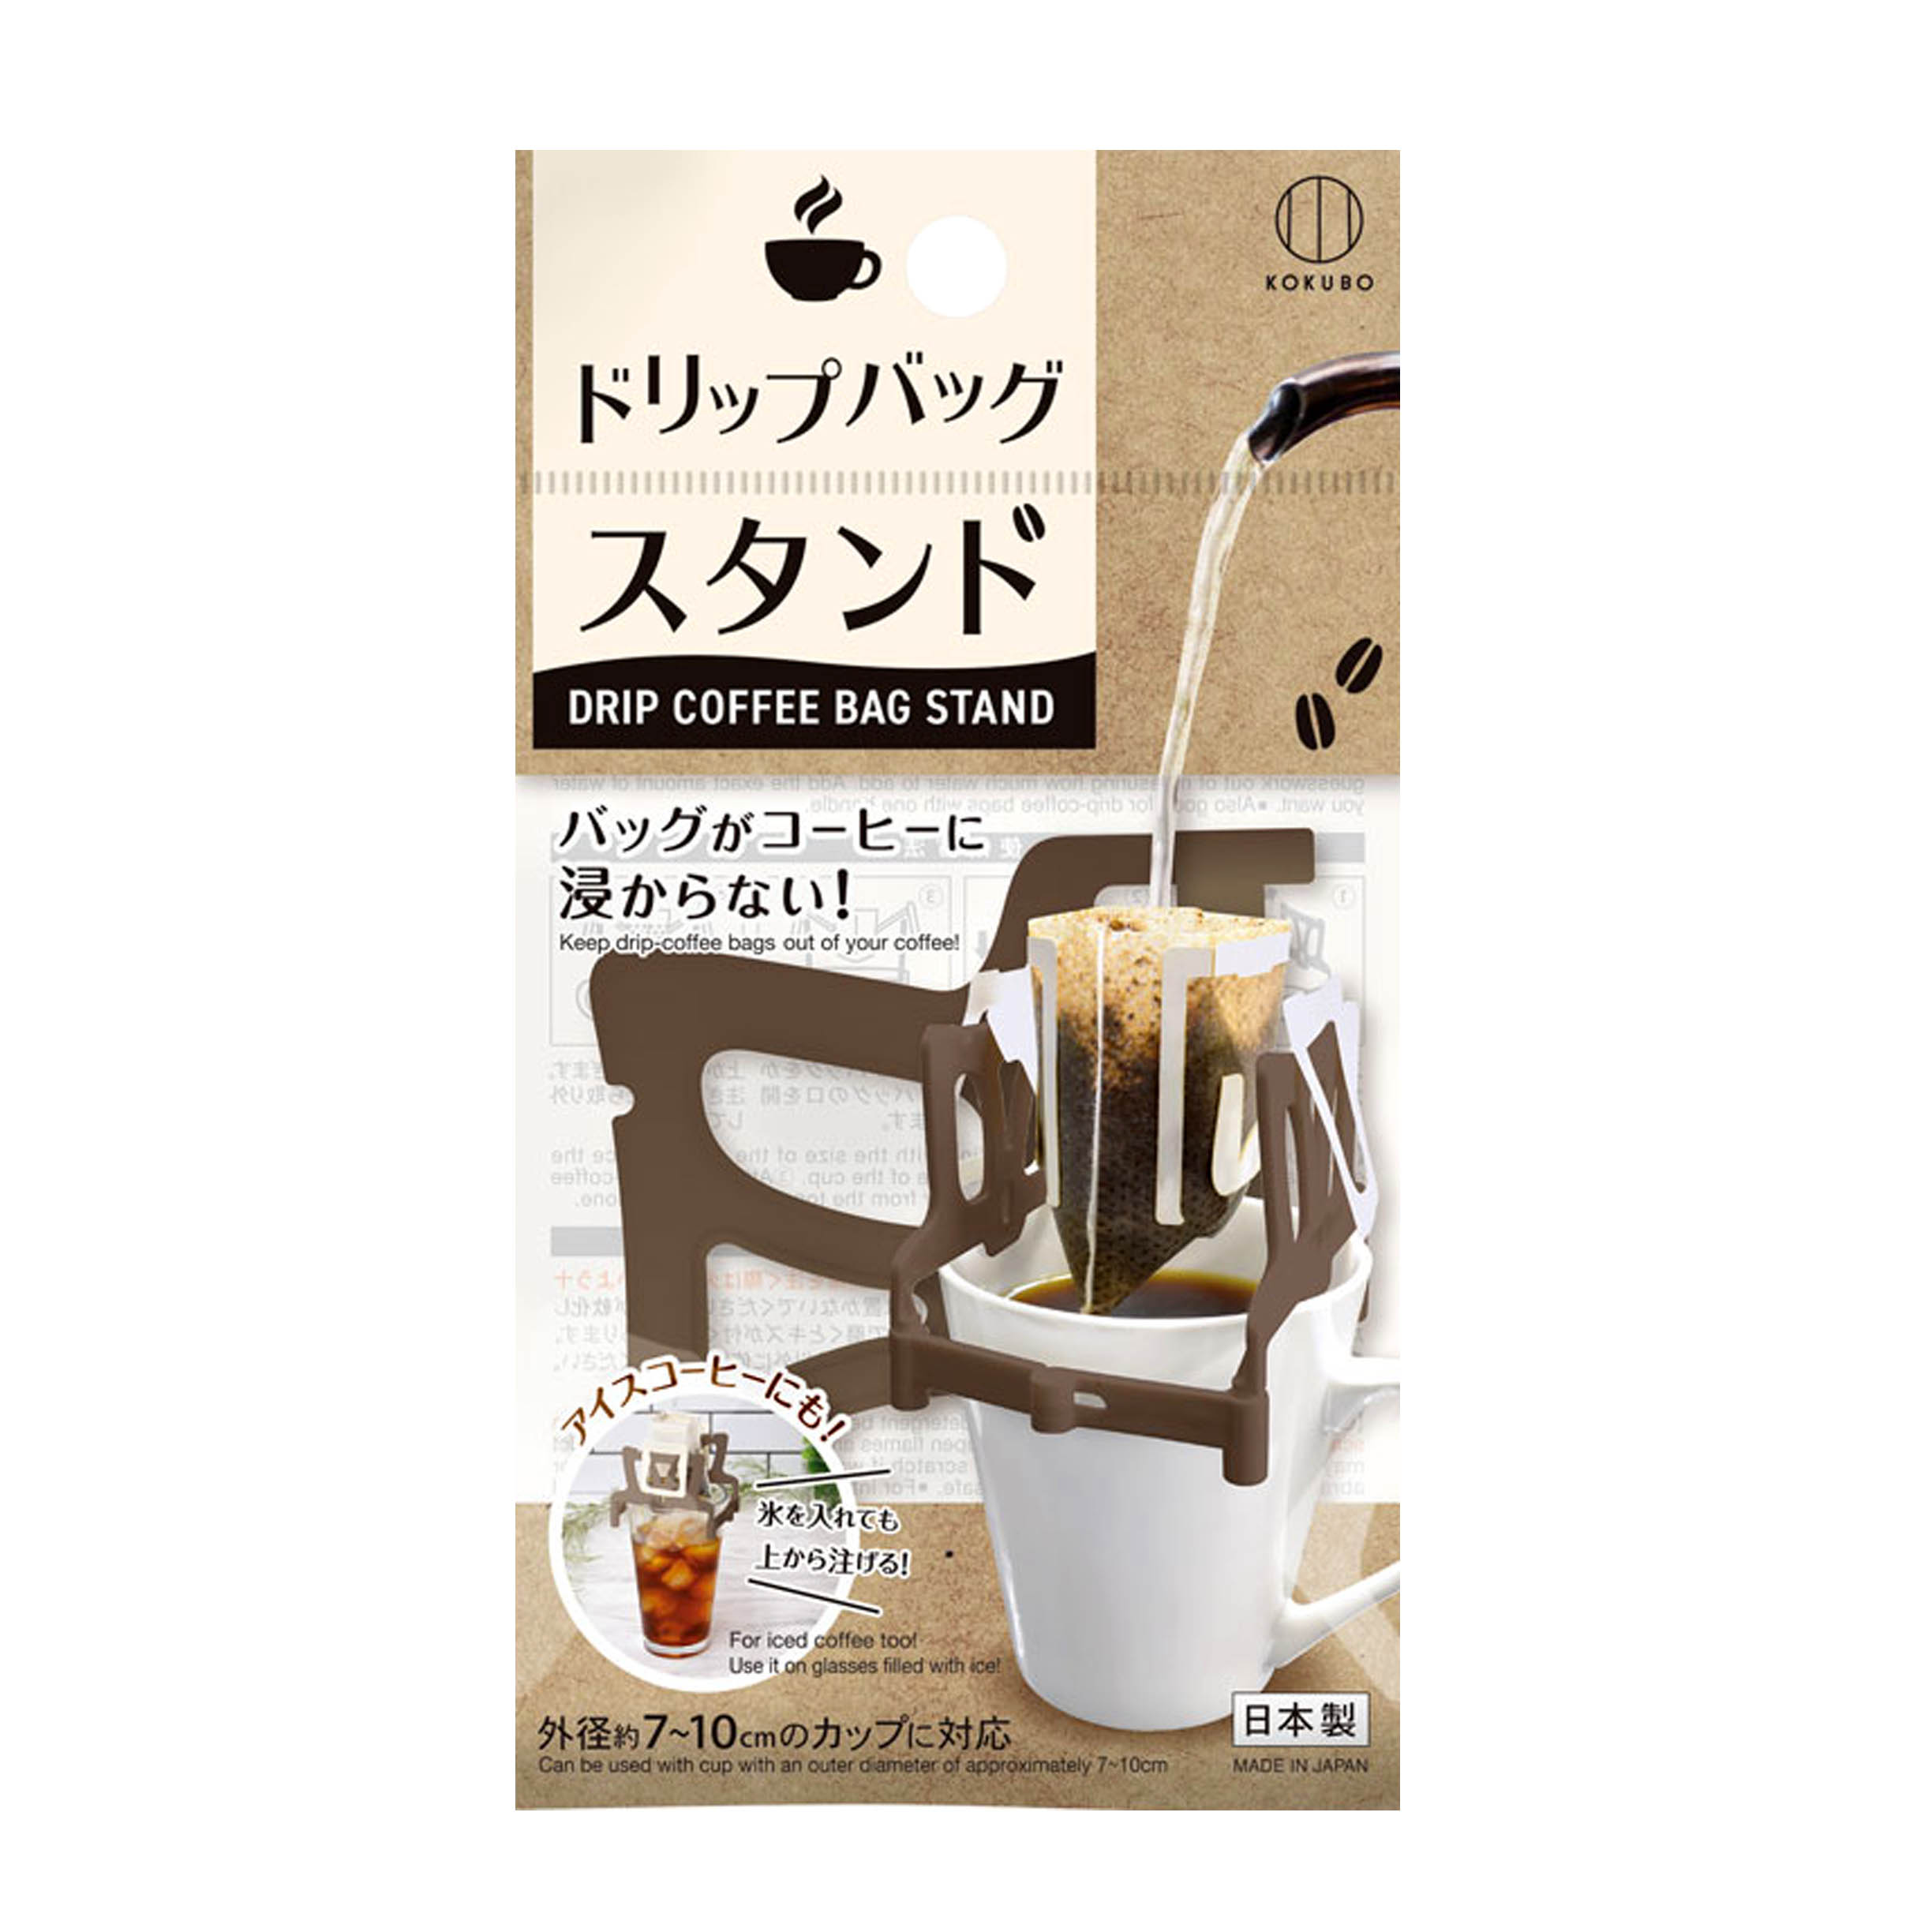 濾掛式咖啡架-KK-526 濾掛咖啡架 小久保工業所 KOKUBO 日本製造進口